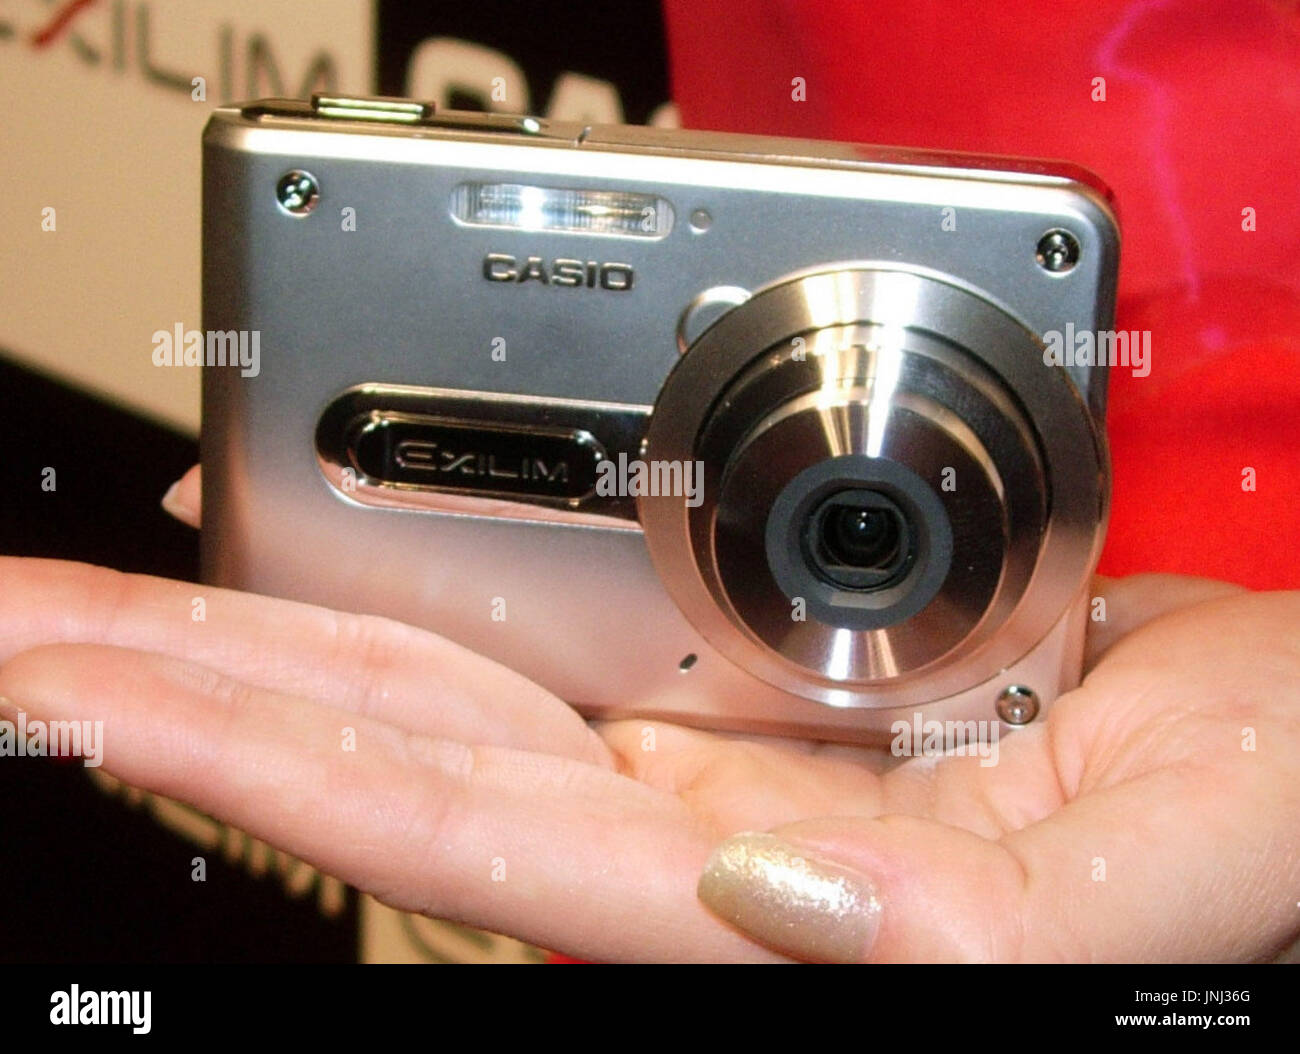 TOKYO, Giappone - Casio Computer Co. lancerà il più piccolo al mondo  fotocamera digitale con un obiettivo zoom, Exilim Card EX-S100 (foto),  verso la fine di settembre la misura solo 79 centimetri